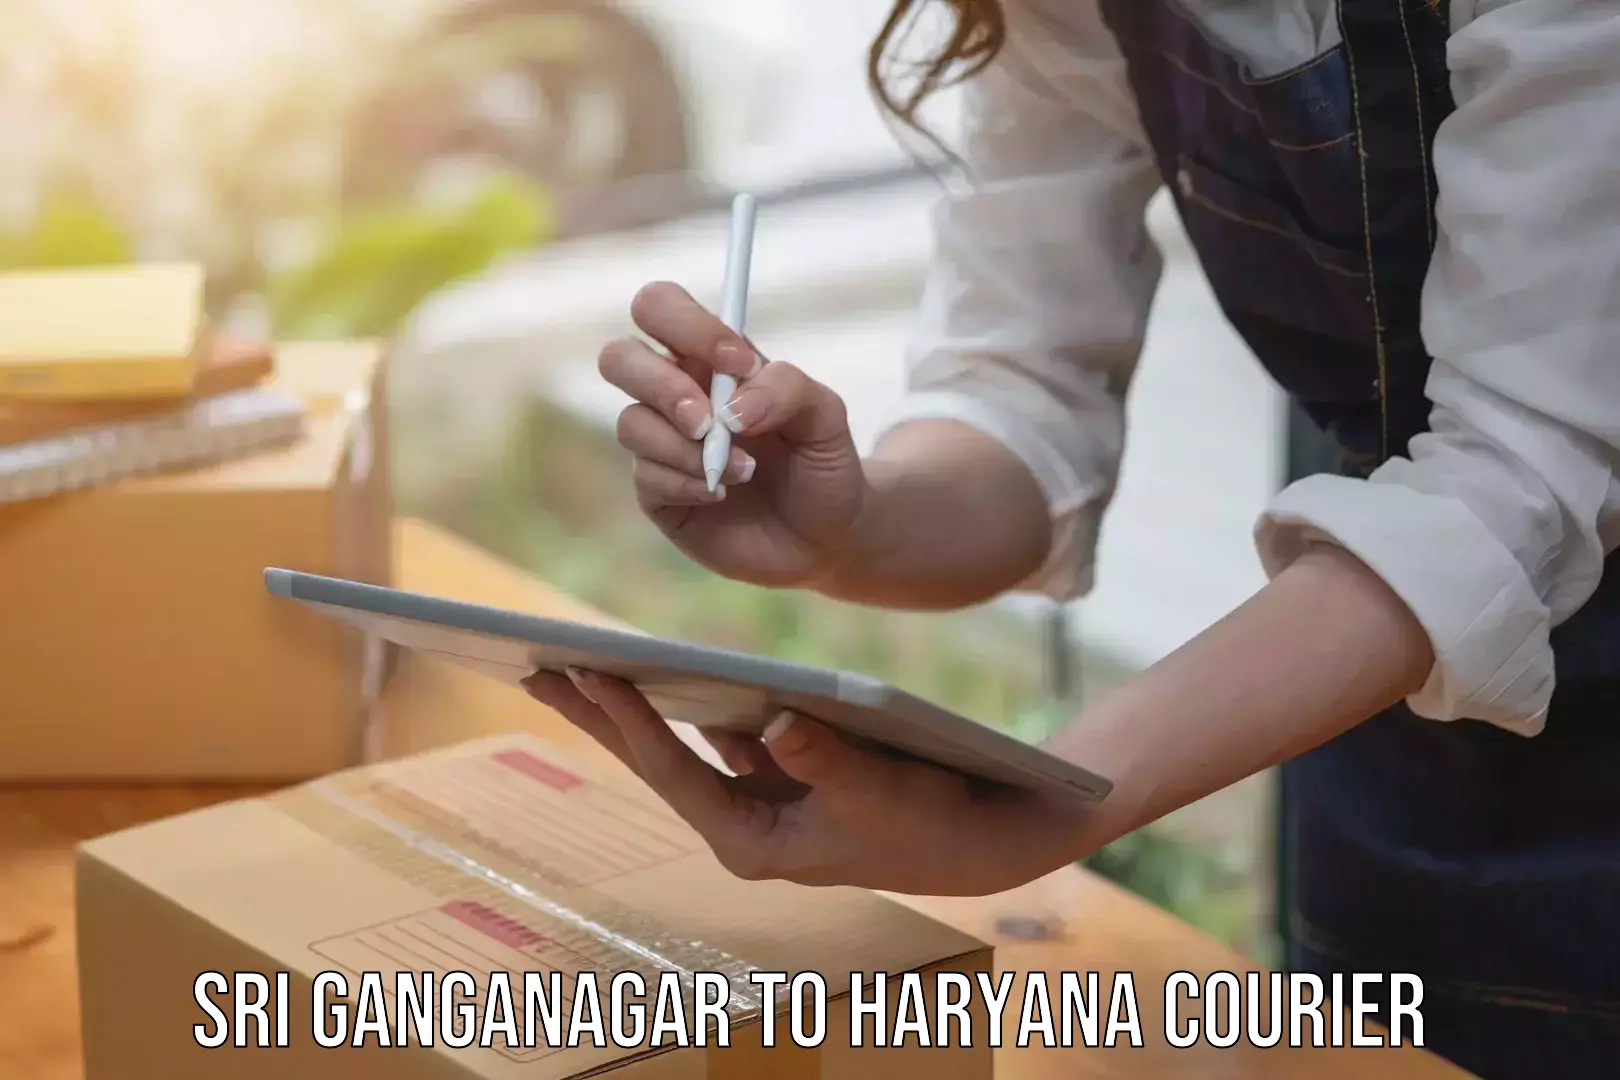 Premium courier services Sri Ganganagar to Yamuna Nagar